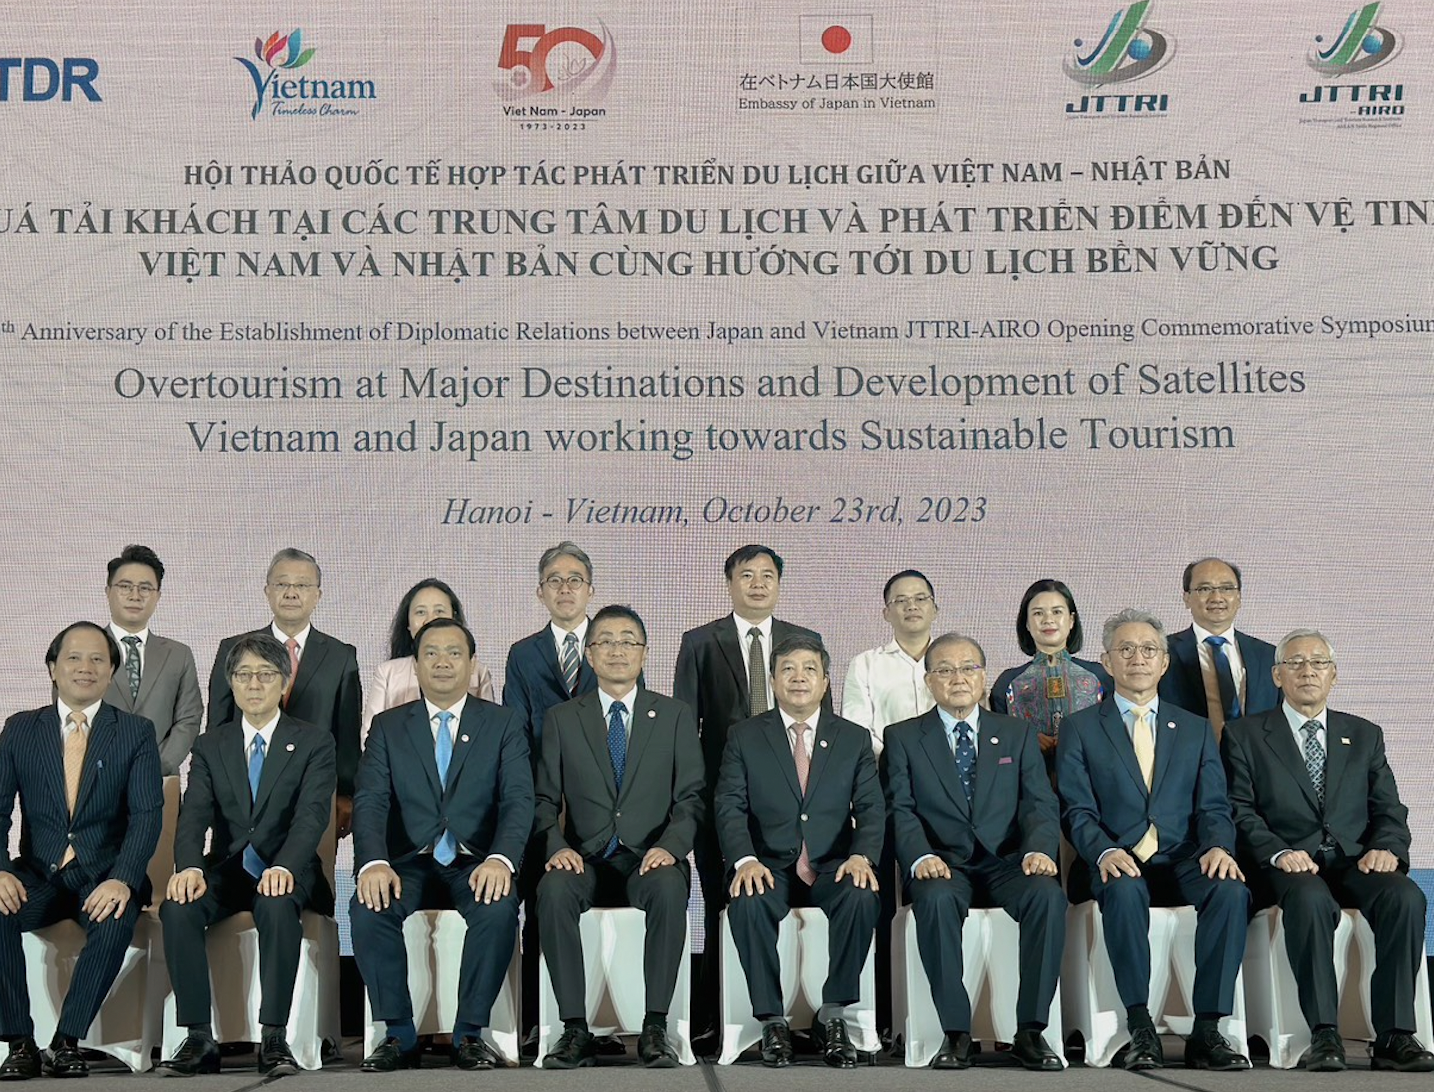 Tăng cường phát triển du lịch bền vững giữa Việt Nam và Nhật Bản